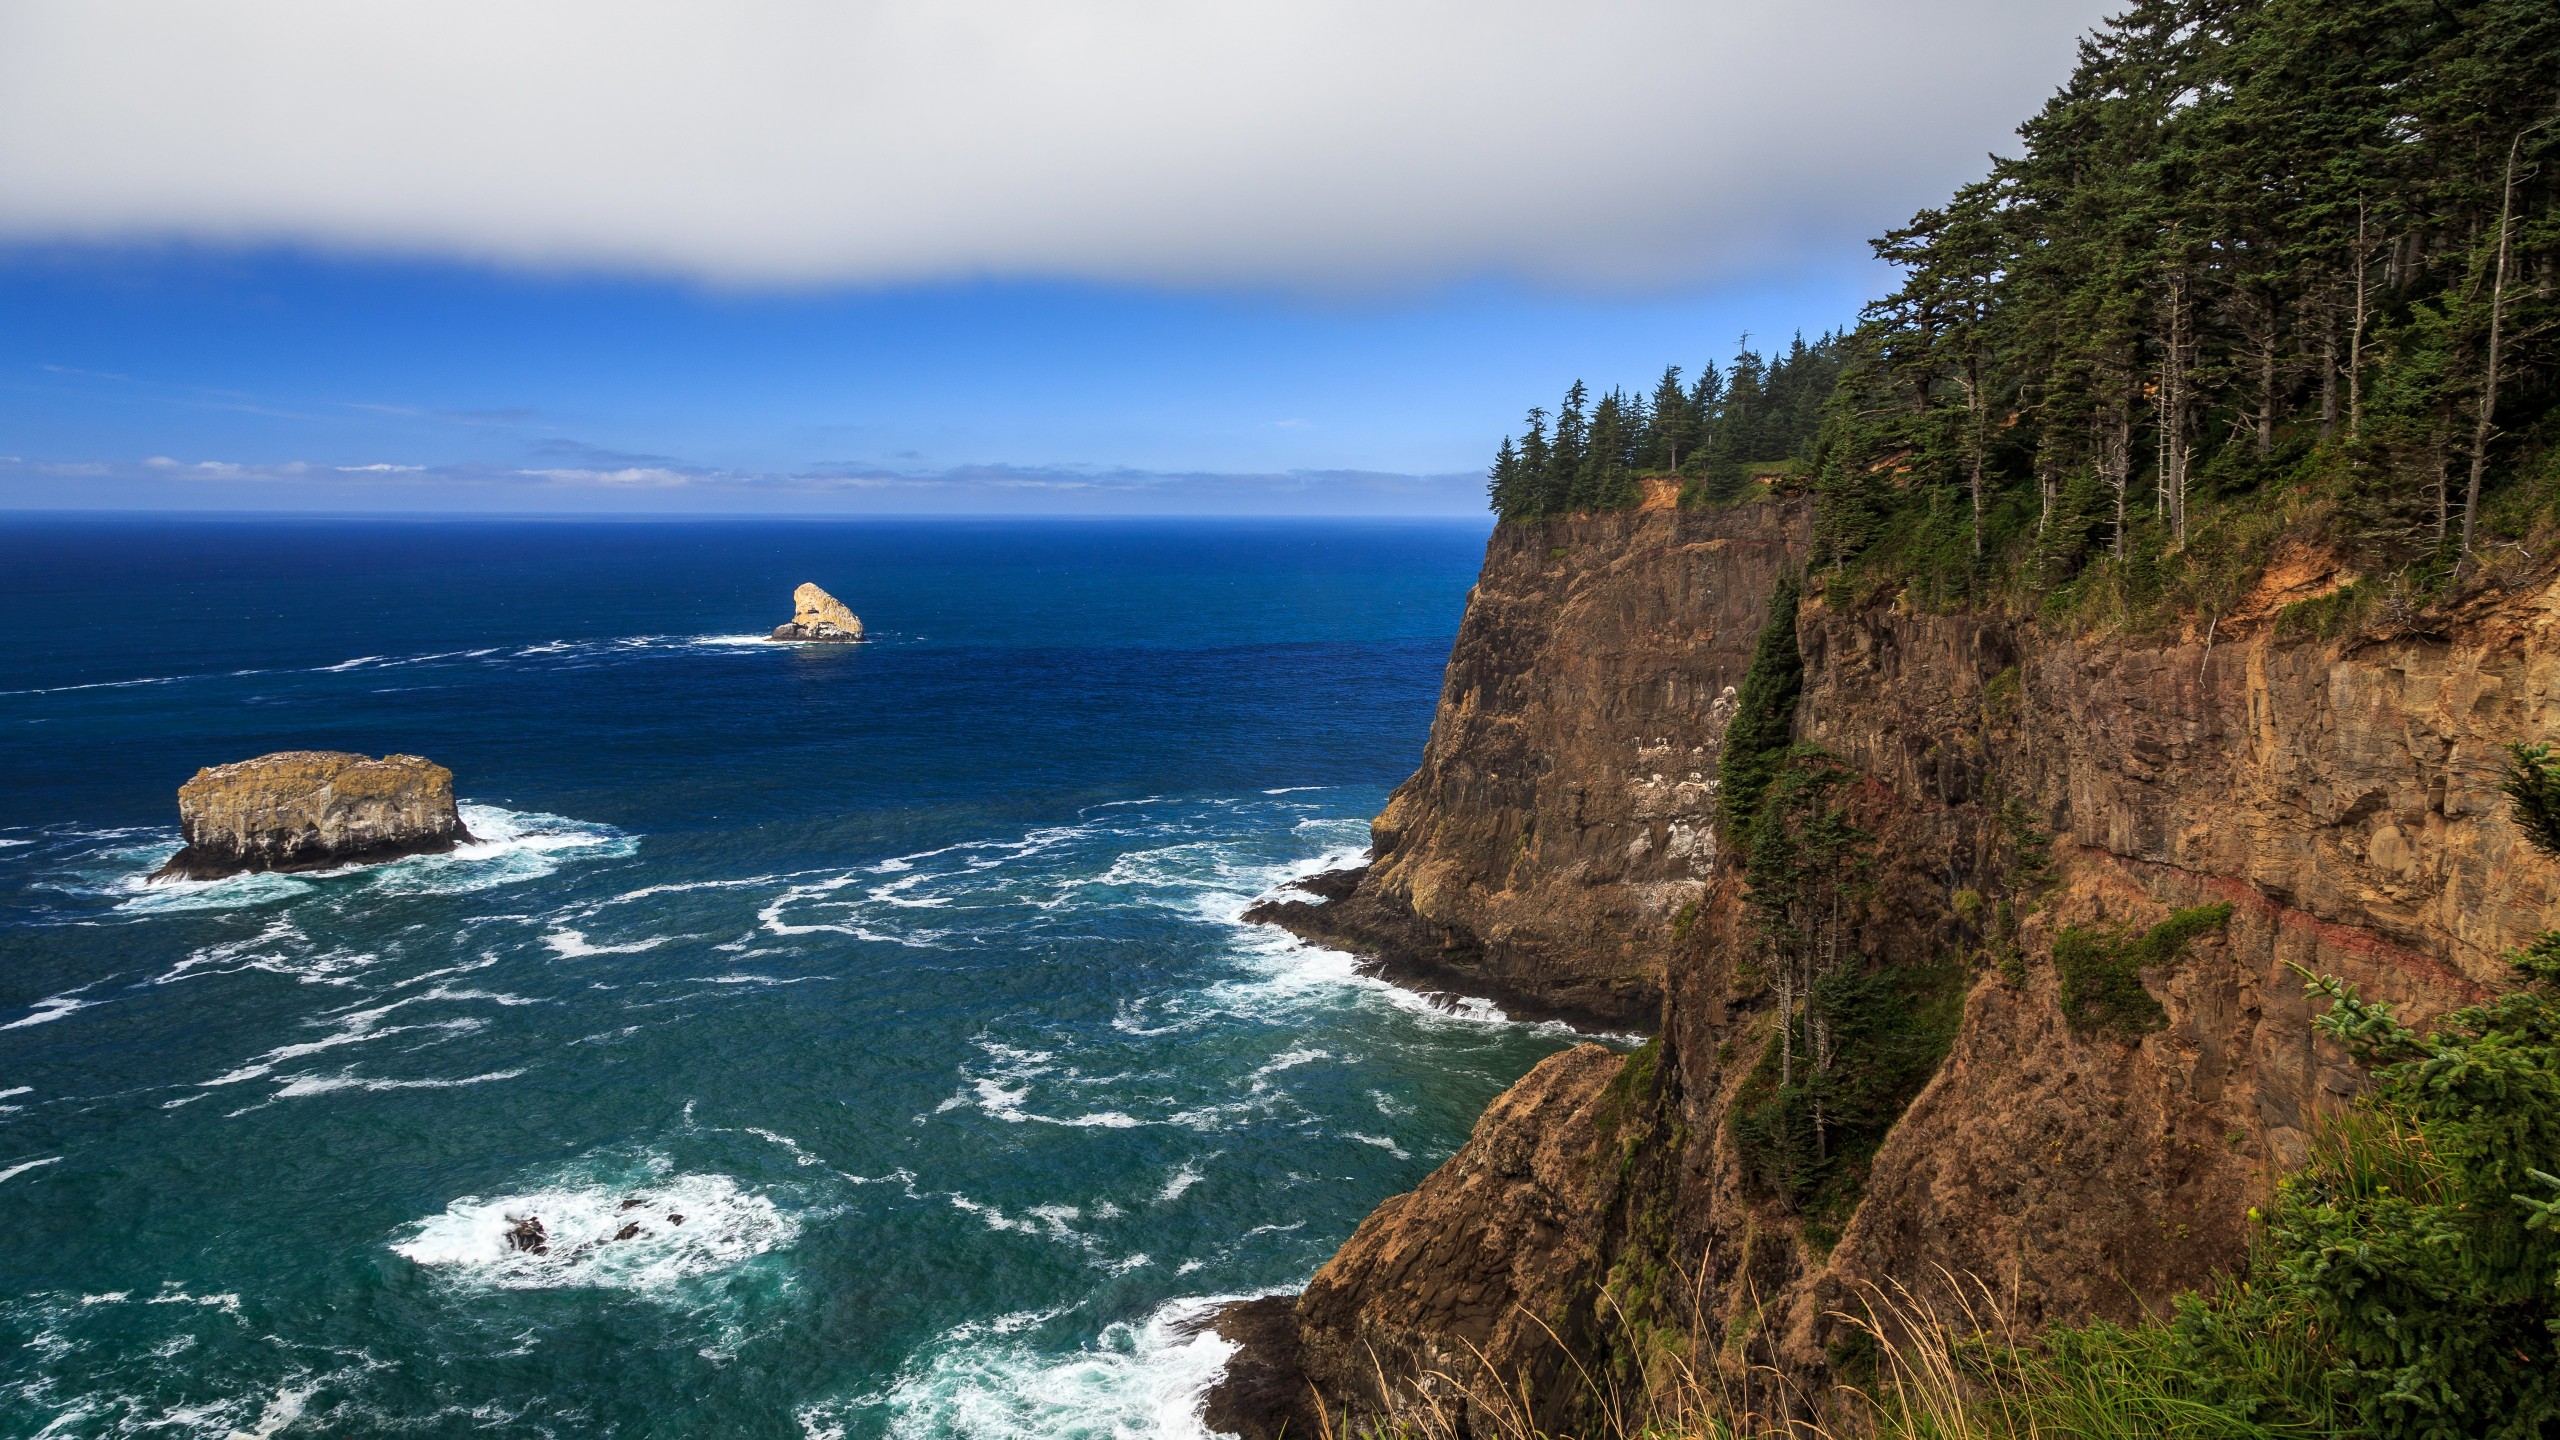 The Left Edge, Cape Lookout, Oregon Wallpaper for Desktop 2560x1440